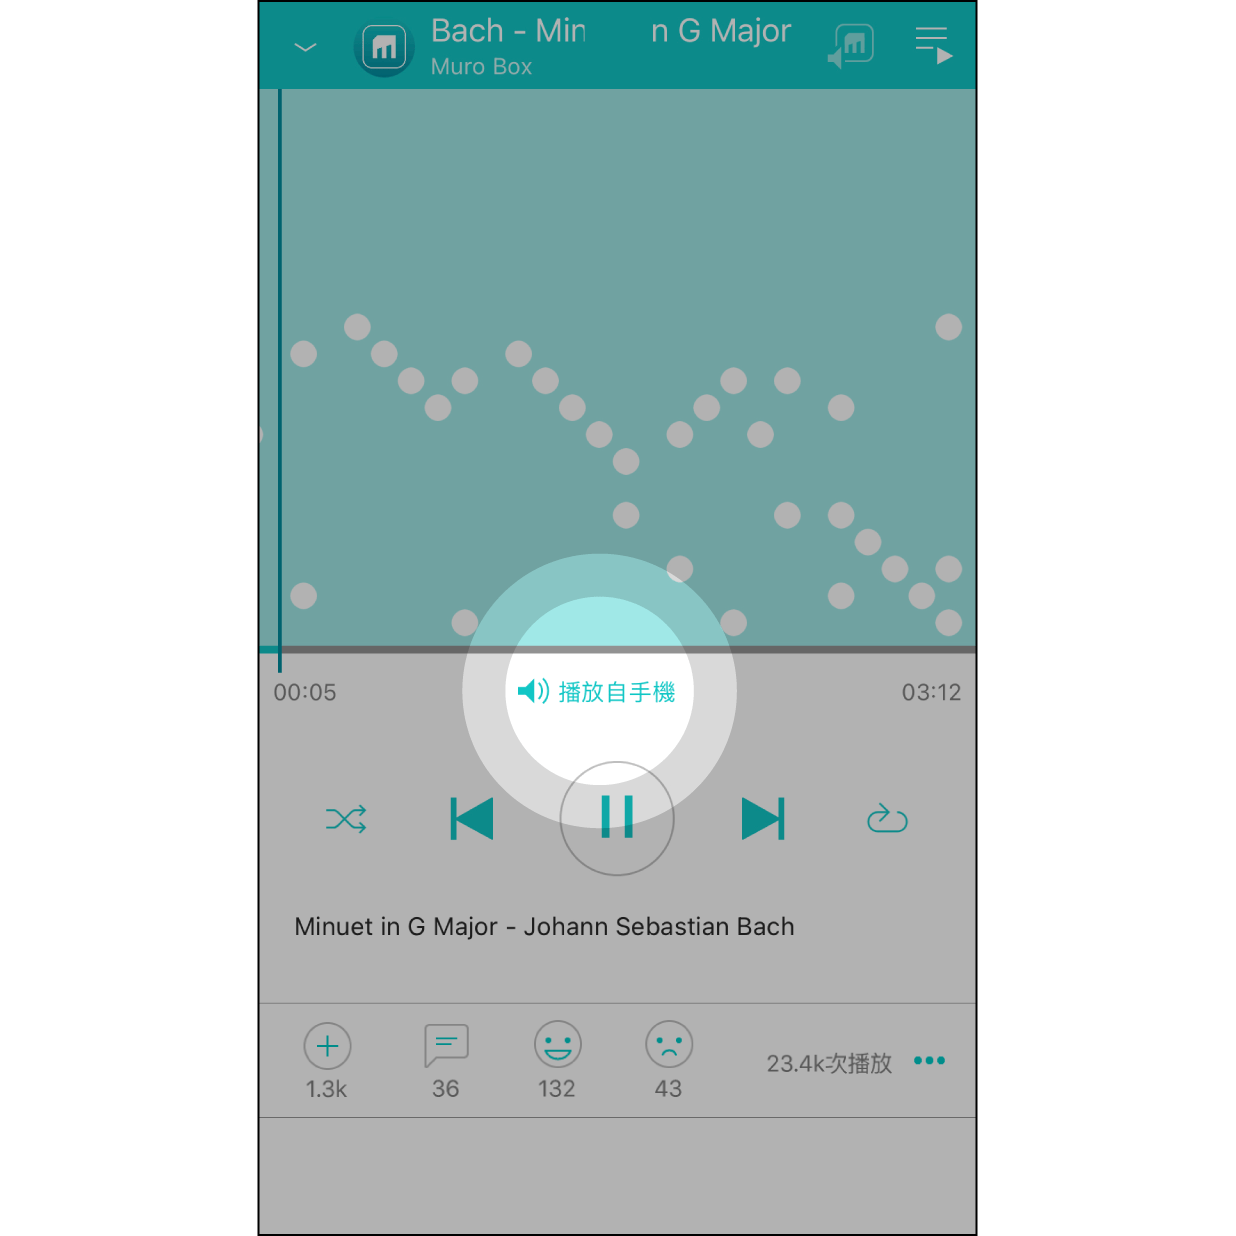 切換手機/音樂盒播放當 app 成功連接 Muro Box 播放時，點擊「播放自手機/音樂盒」可選擇從在手機或音樂盒之間切換播放來源。（未連接 Muro Box 時則從手機播放）